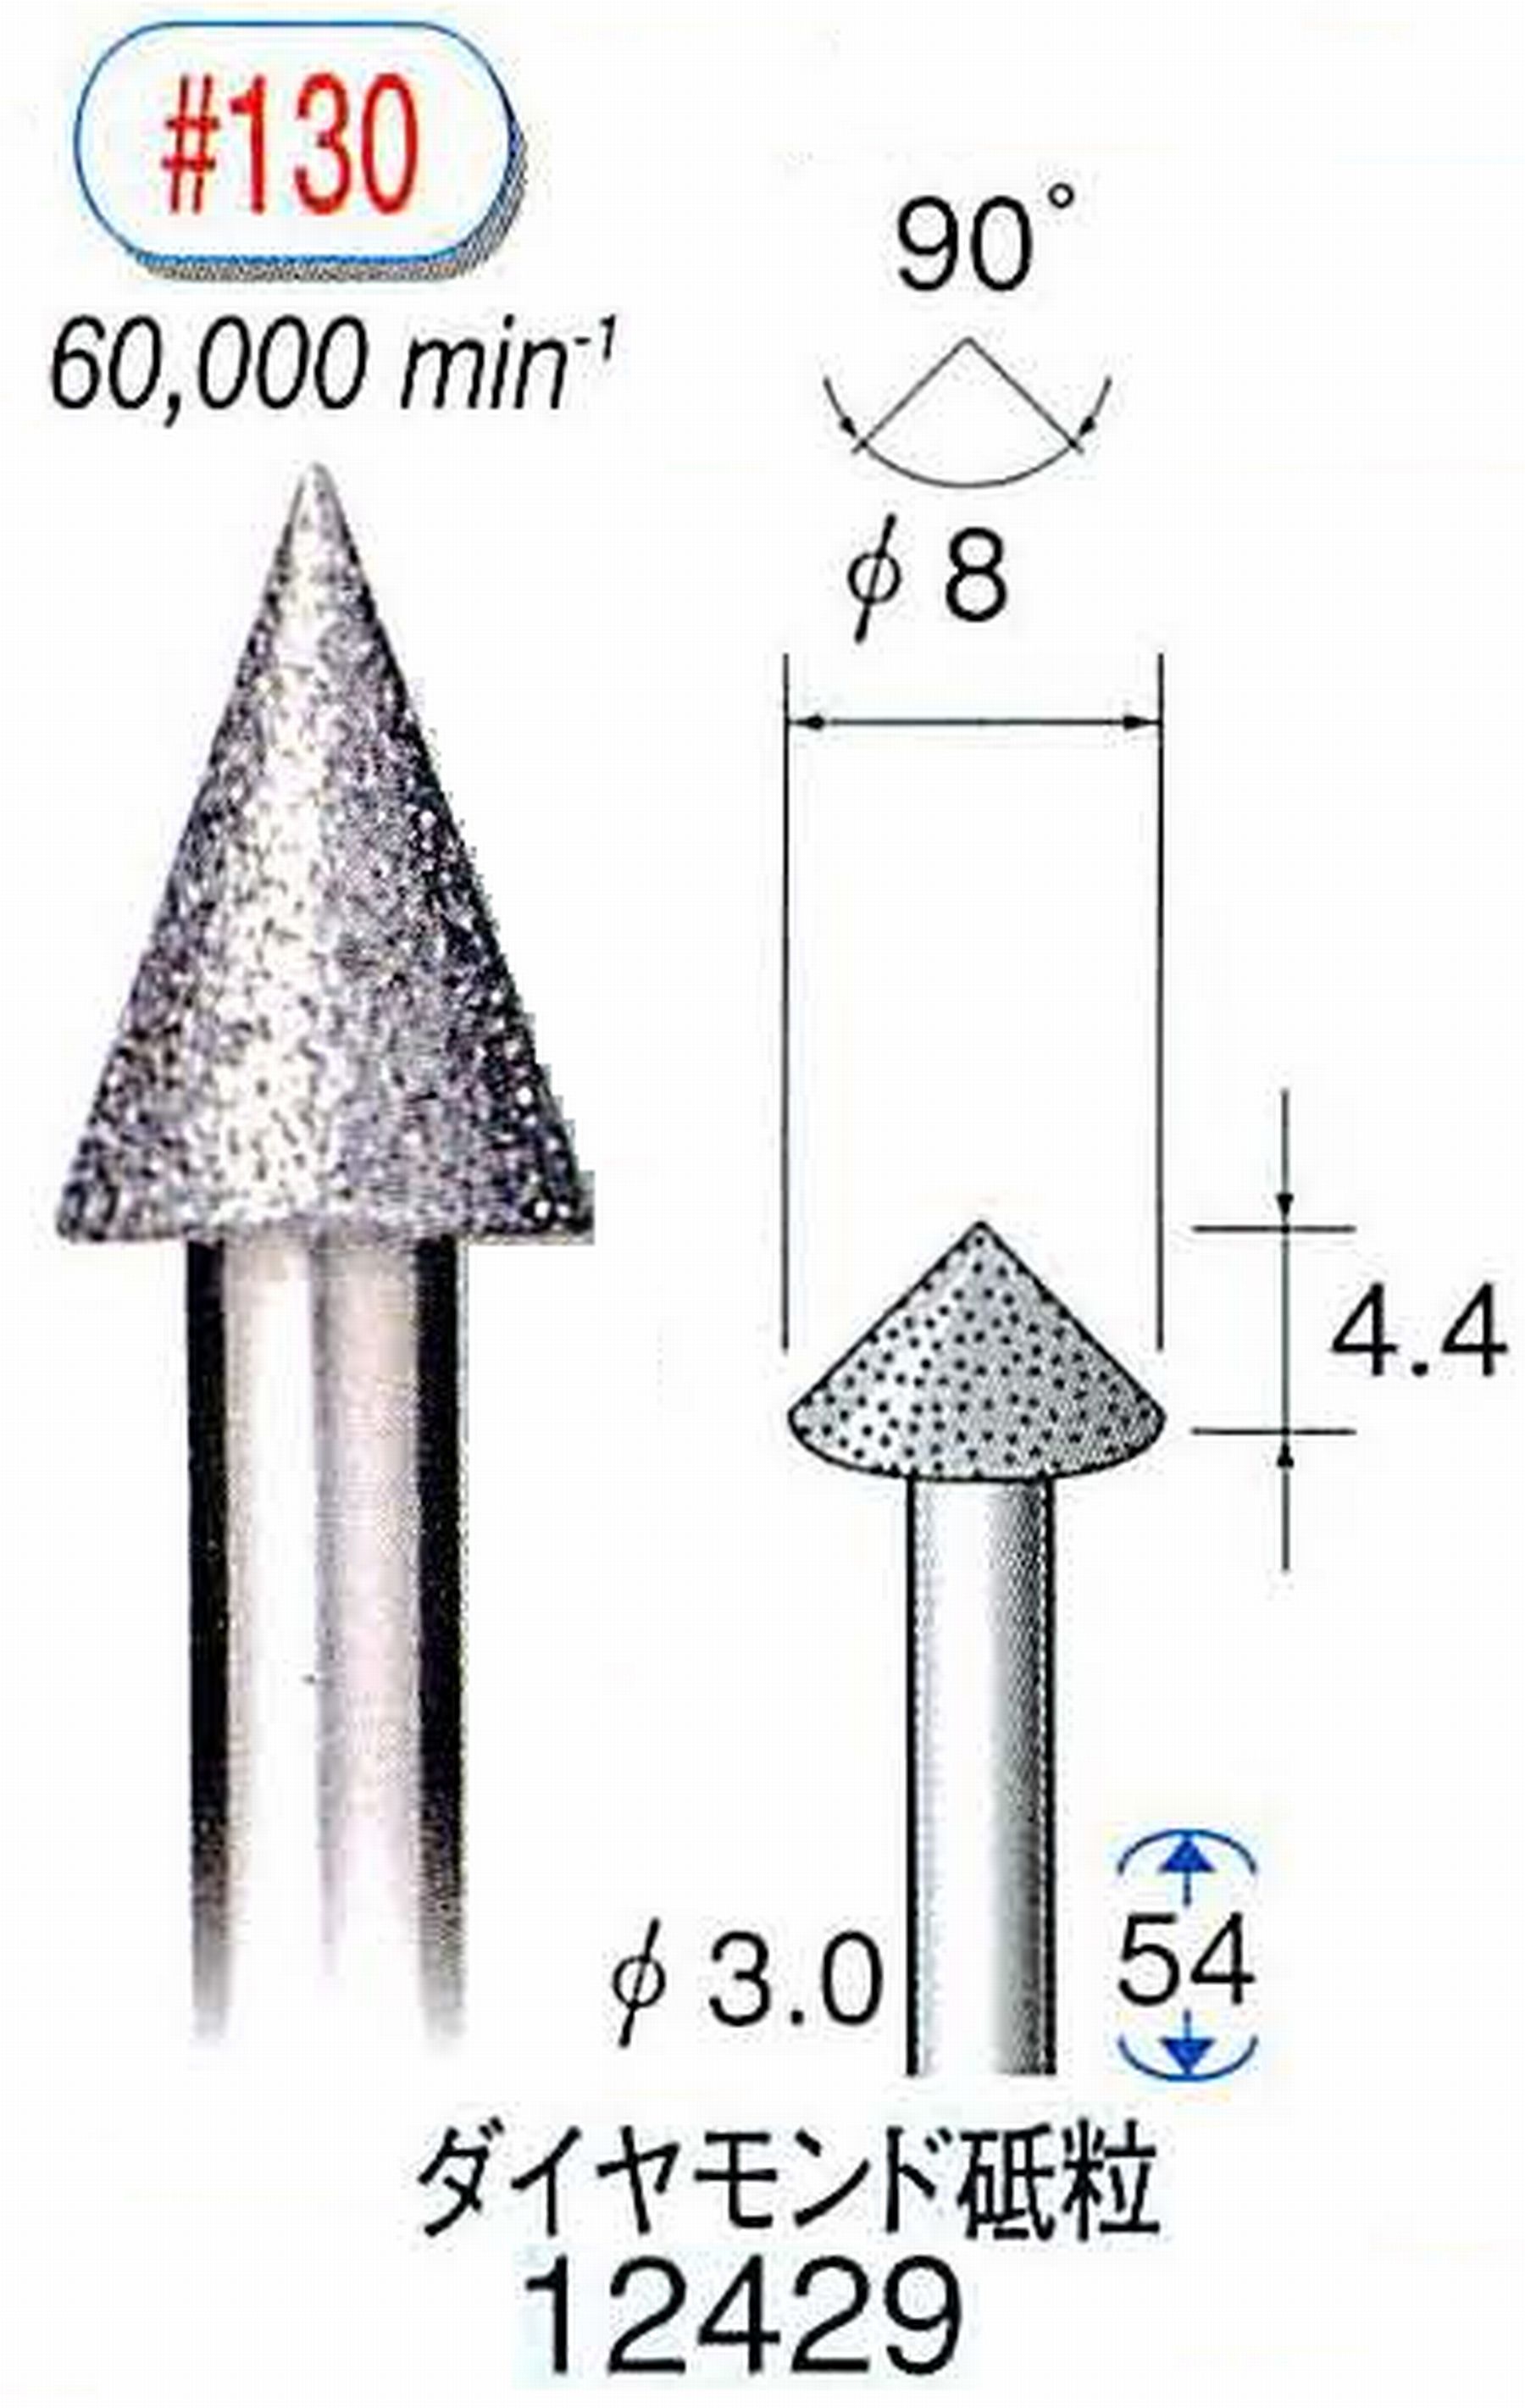 ナカニシ/NAKANISHI 電着ダイヤモンド ダイヤモンド砥粒 軸径(シャンク)φ3.0mm 12429